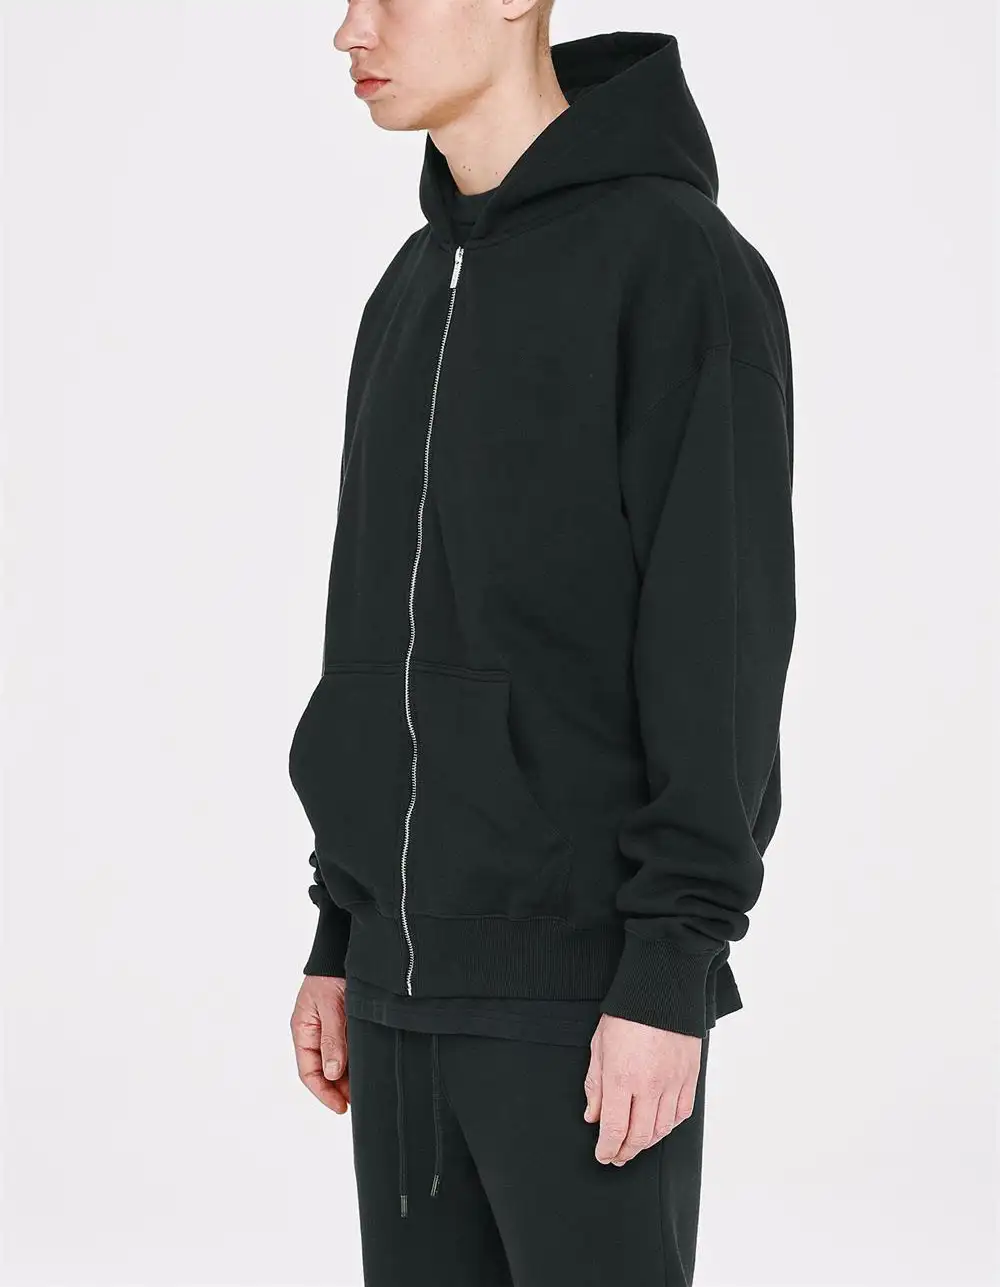 wholesale costom fleece black men hoodies zip up cotton oversized long zip up hoodie